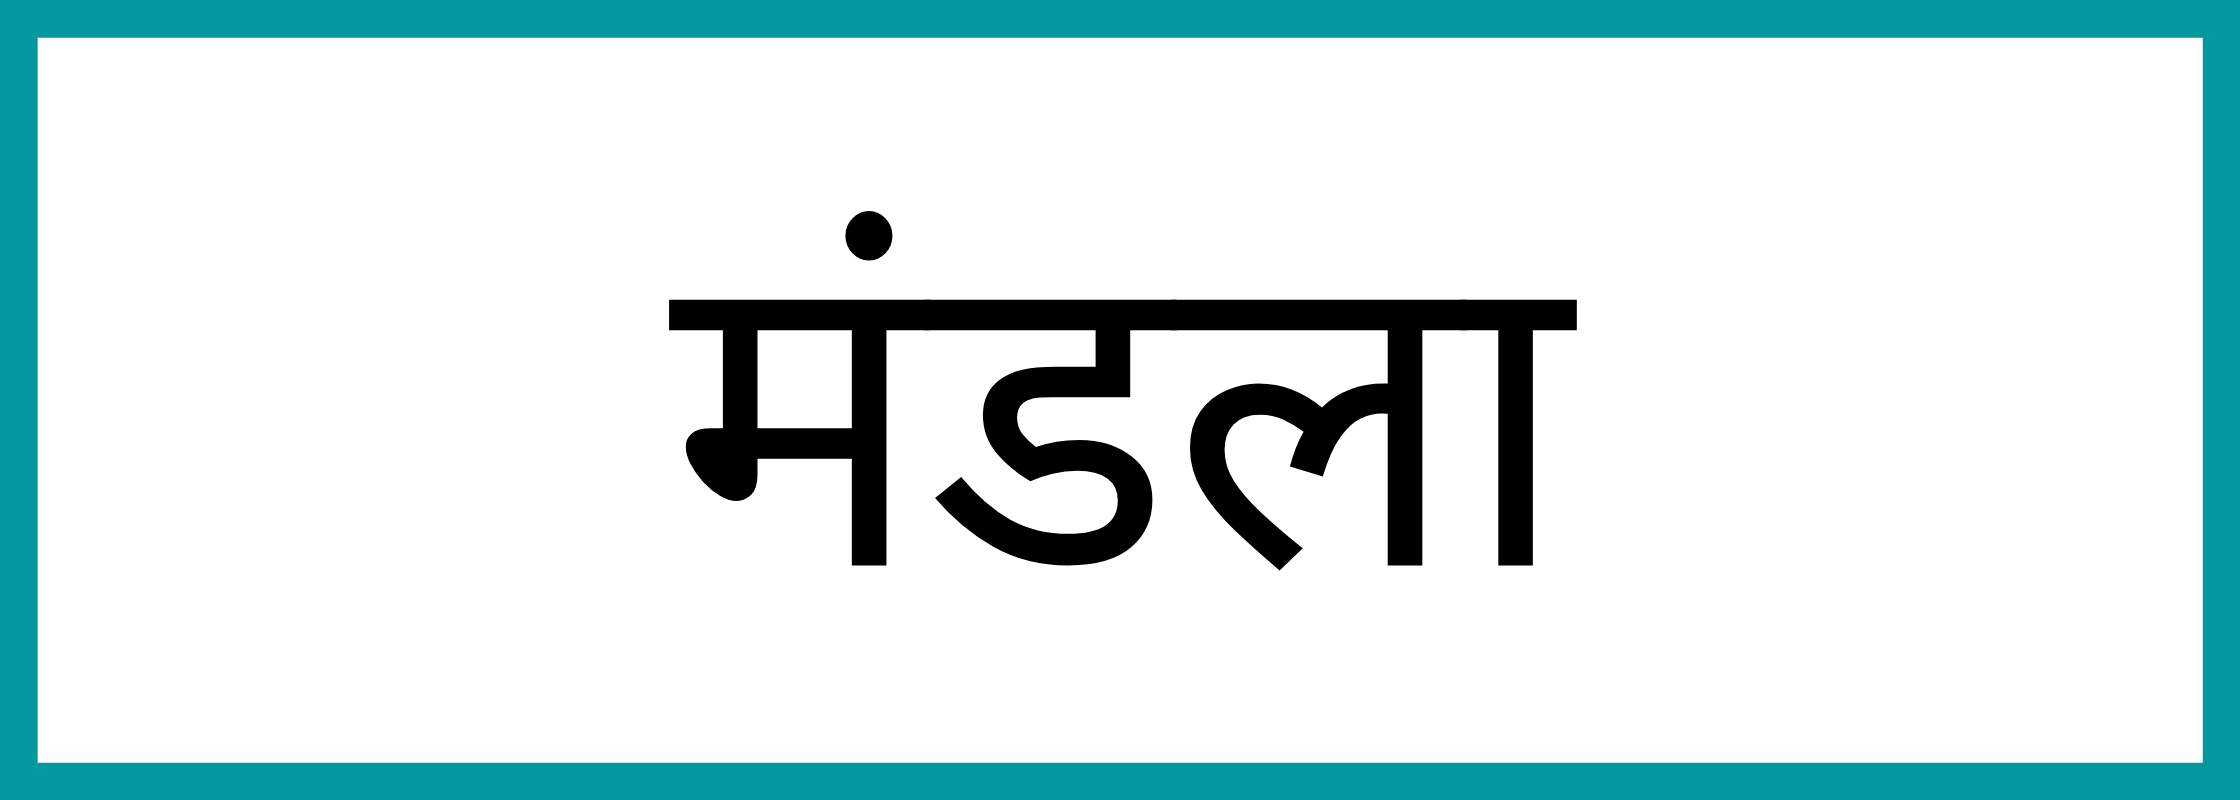 मंडला-Mandla-mandi-bhav